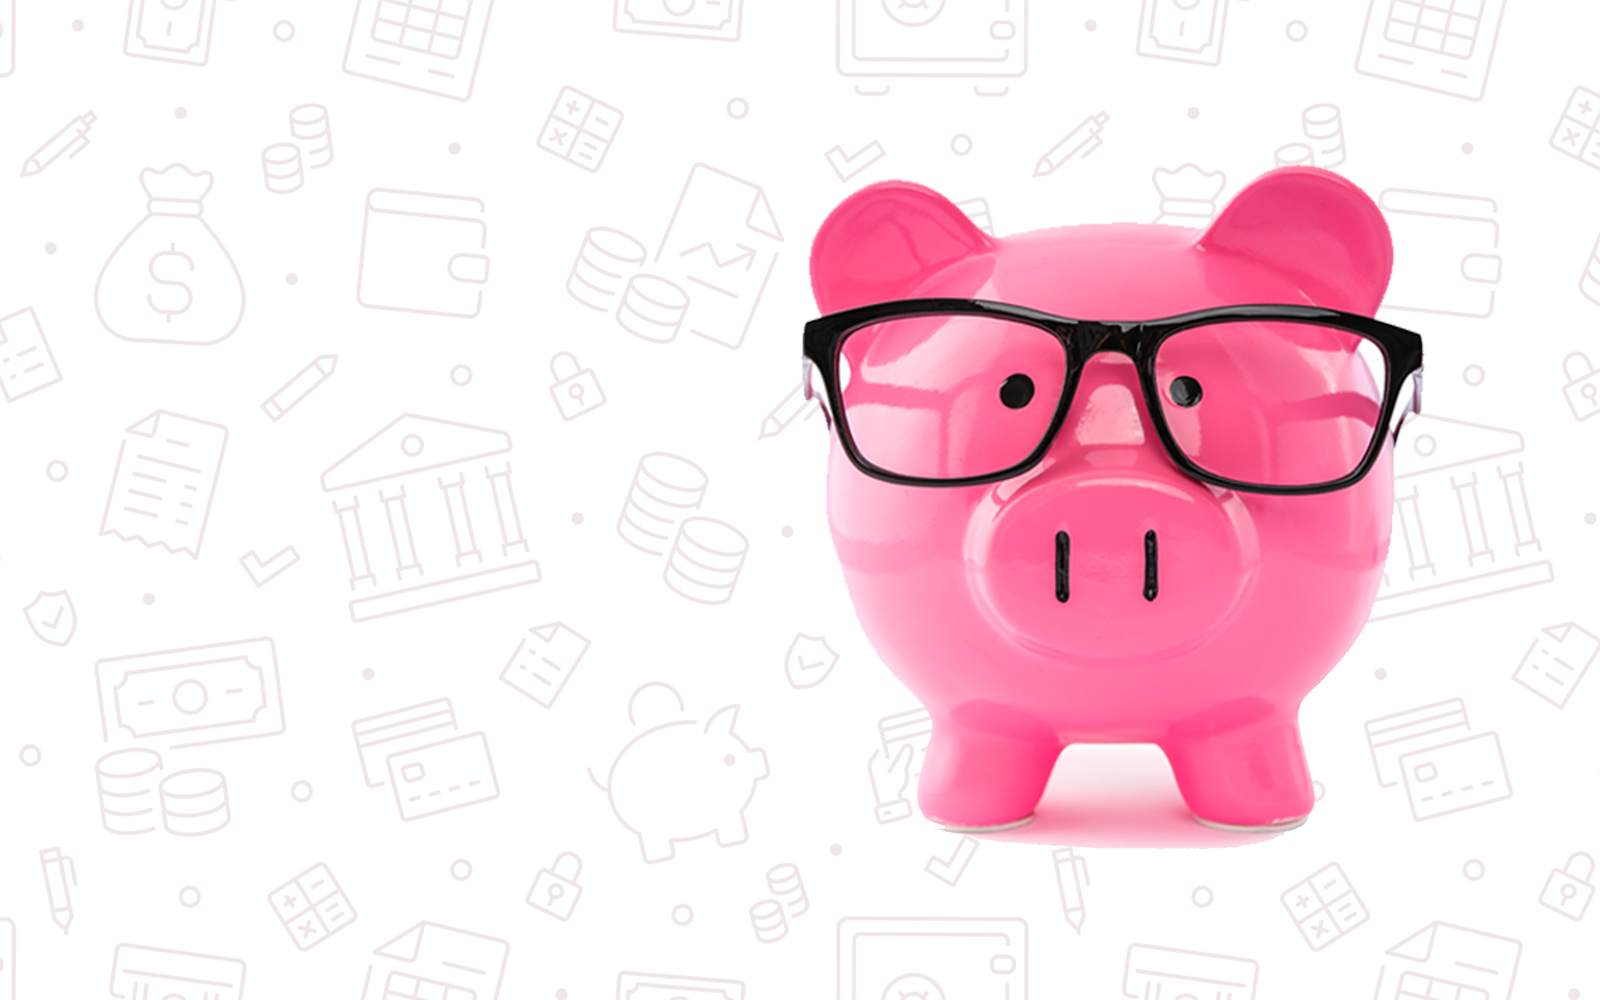 Piggy Bank on financial literacy icon backgroun